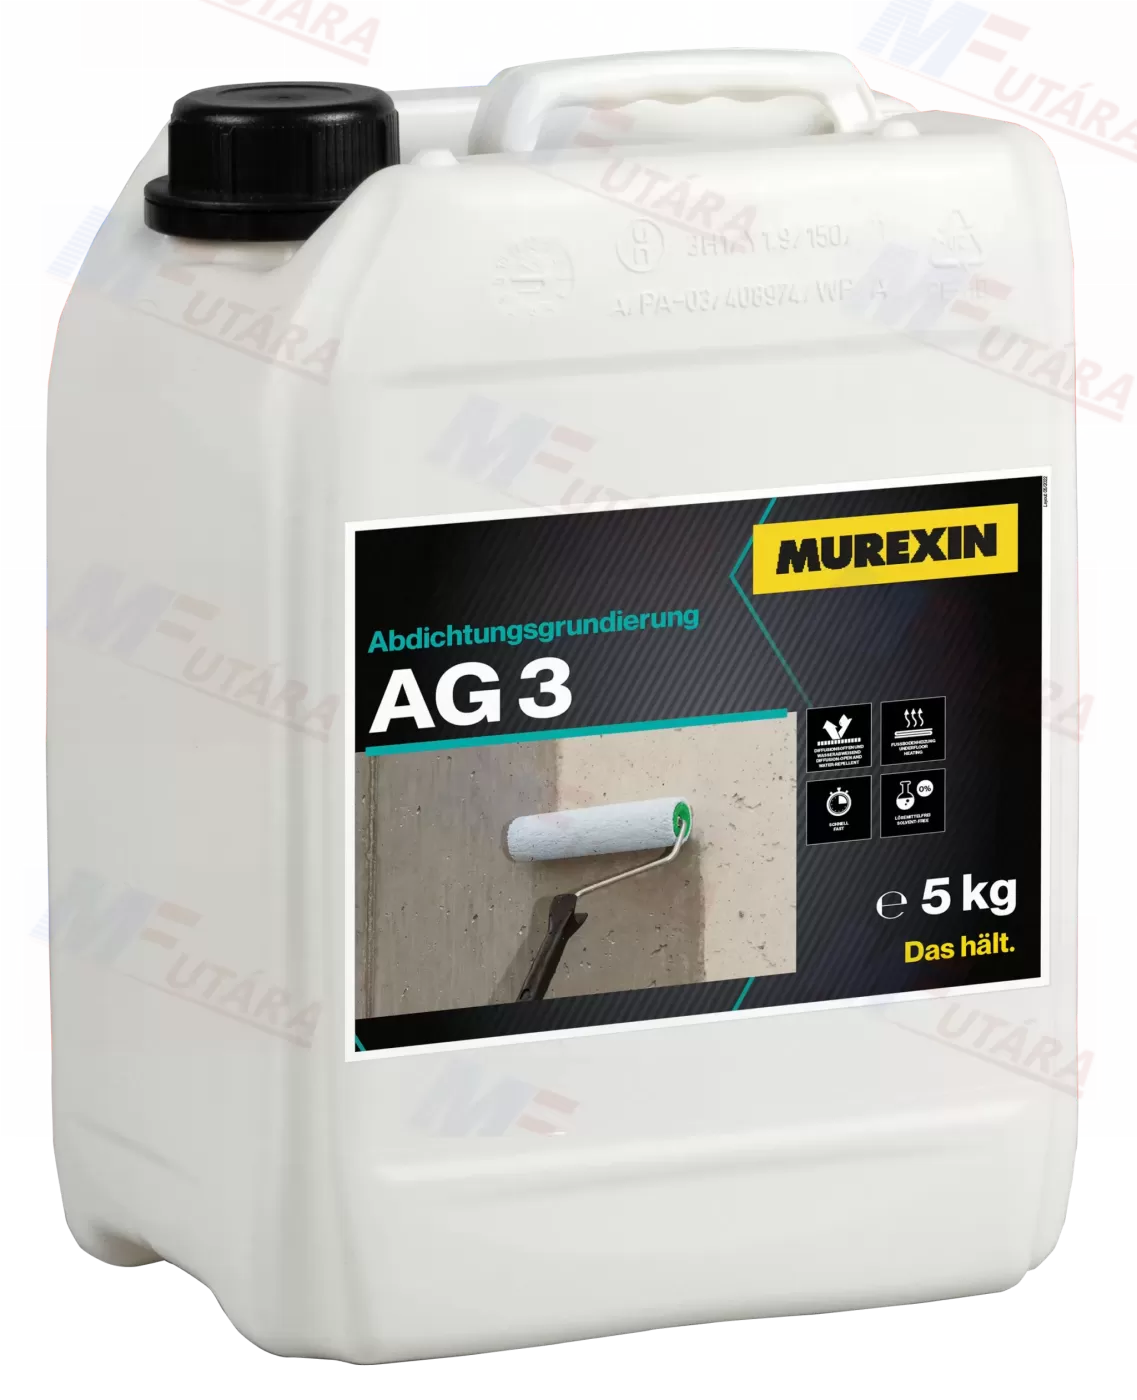 Murexin AG 3 Szigetelőbevonat alapozó